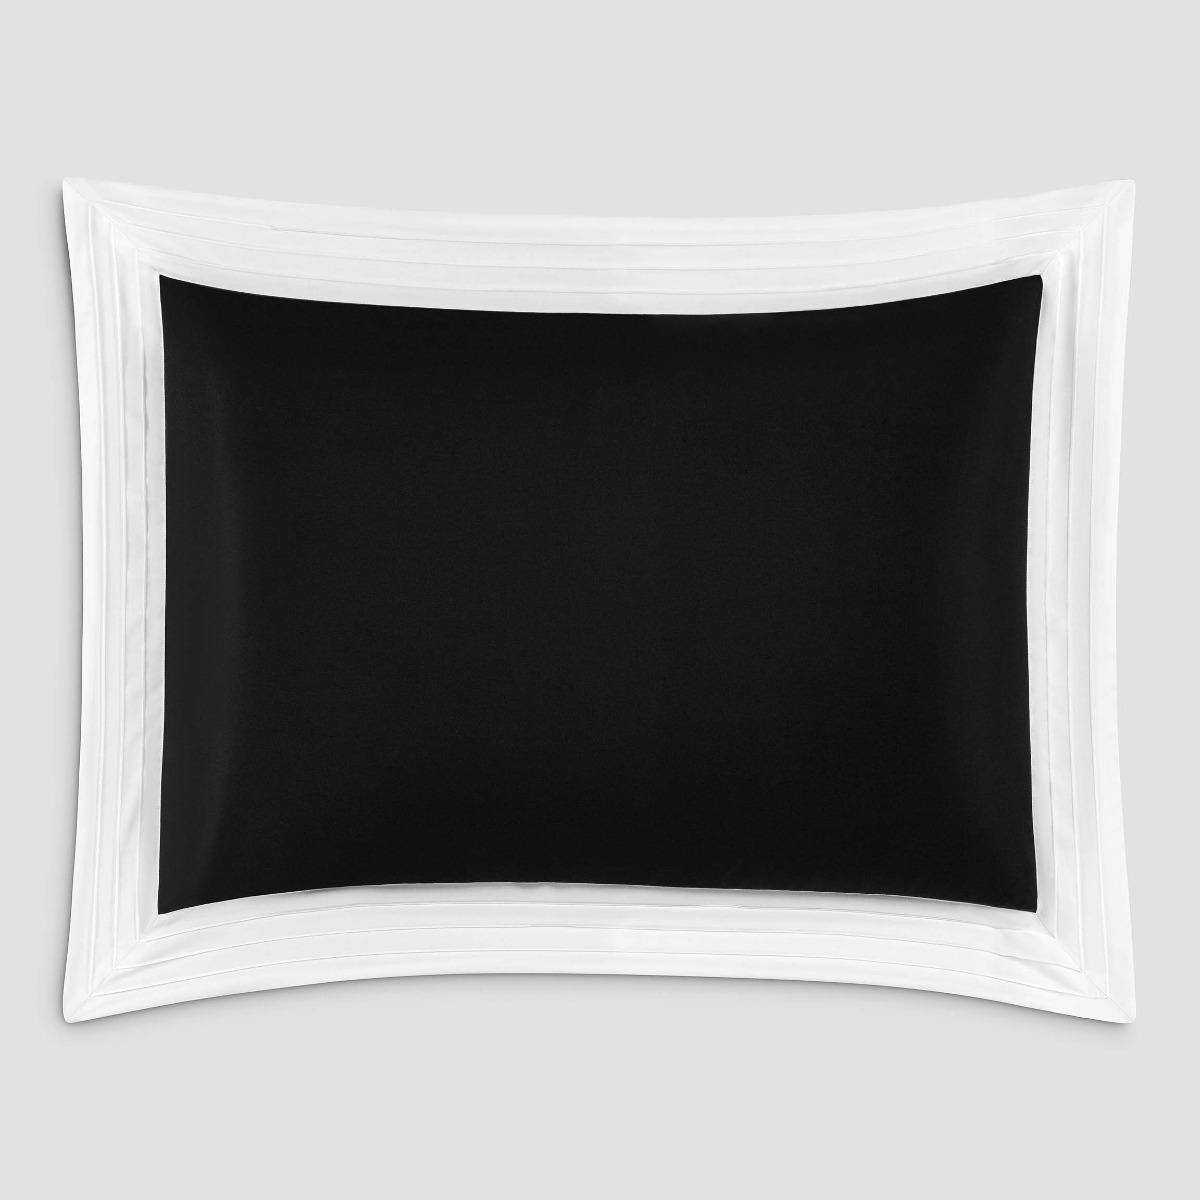 Комплект наволочек Togas Эдем черный/белый 50х70. 2пр комплект полотенец togas аннами серый белый 2пр